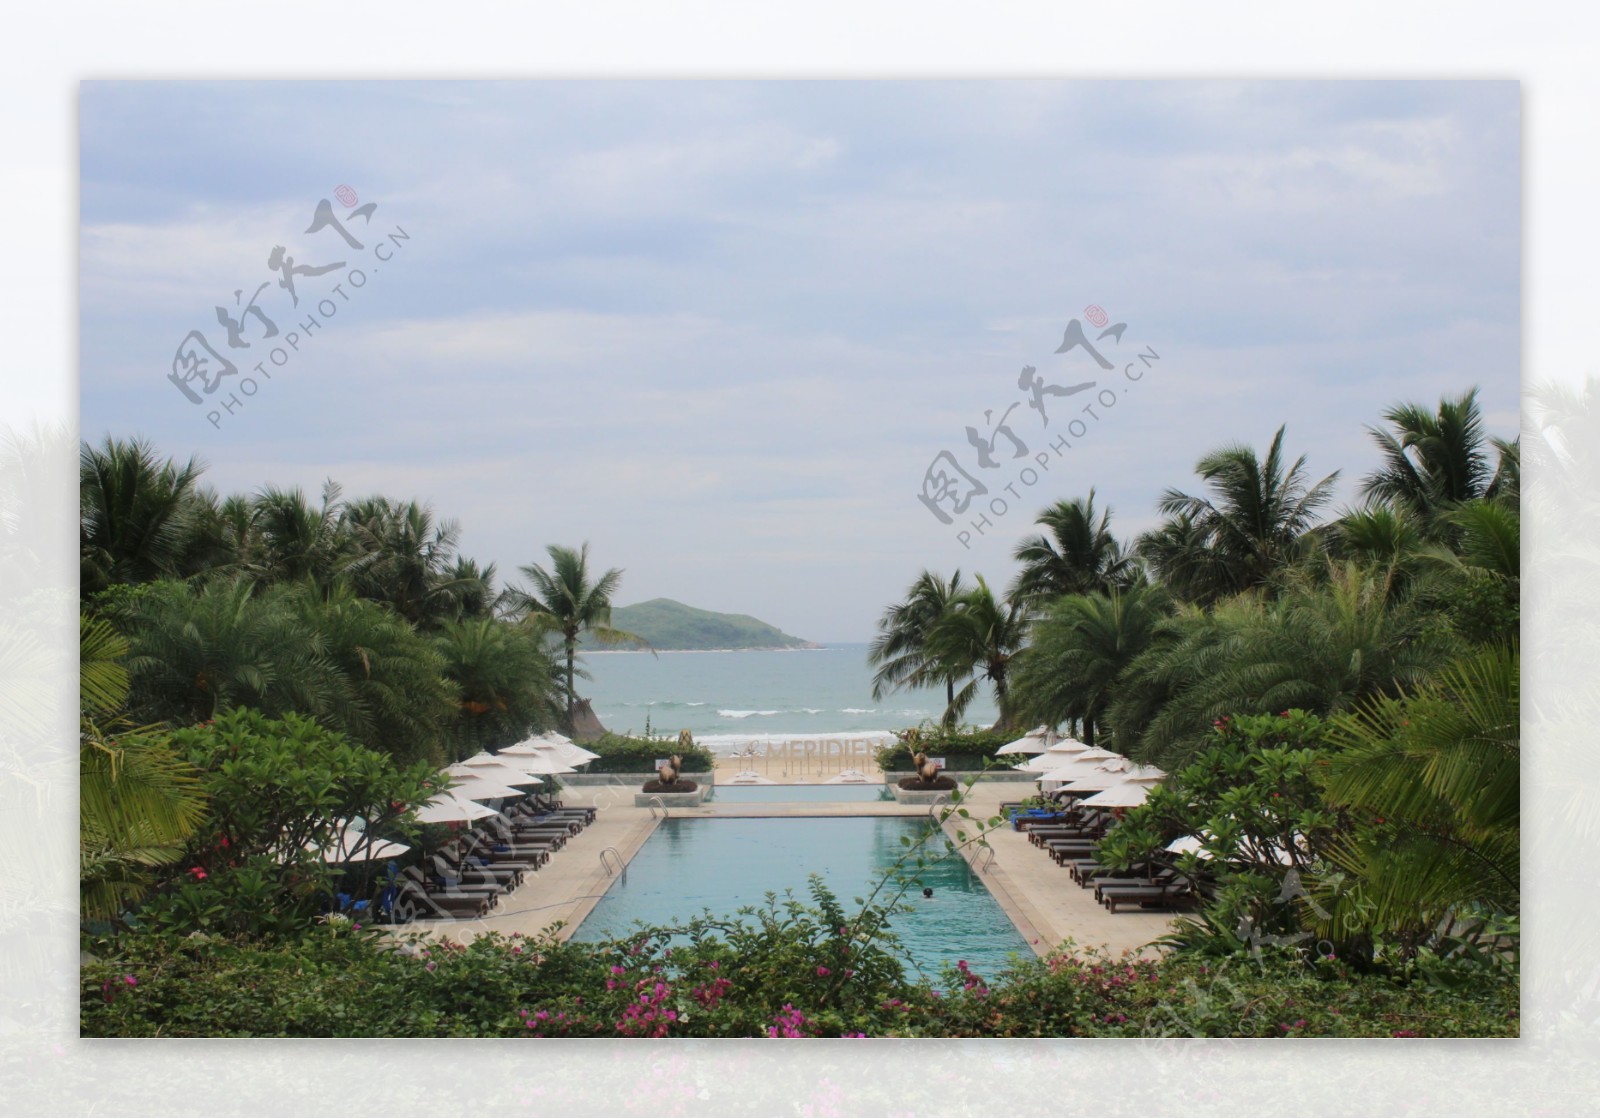 酒店海景热带风情图片